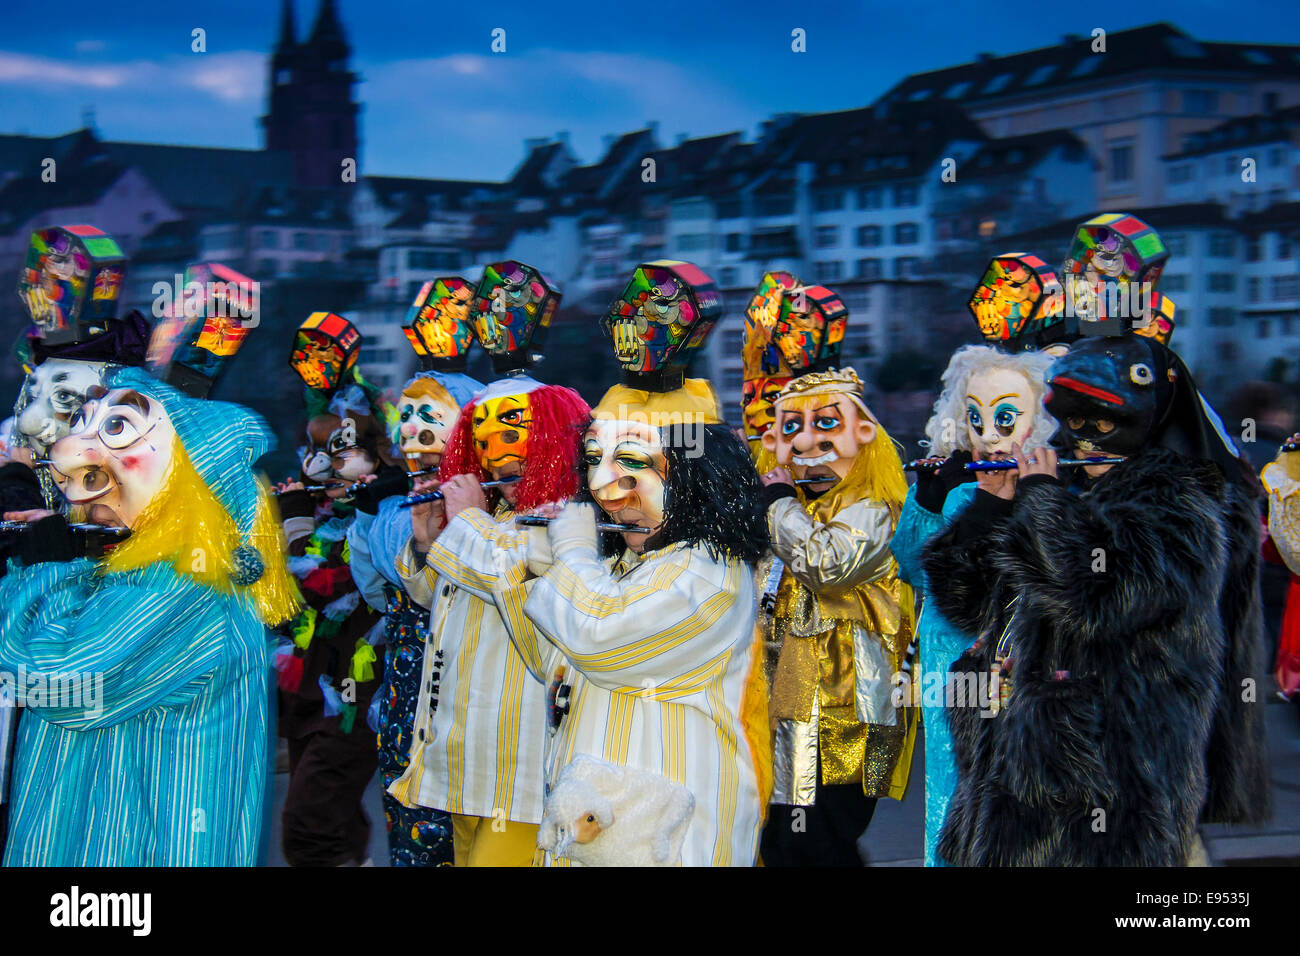 Morgenstraich défilé carnavalesque, Bâle, Suisse Banque D'Images